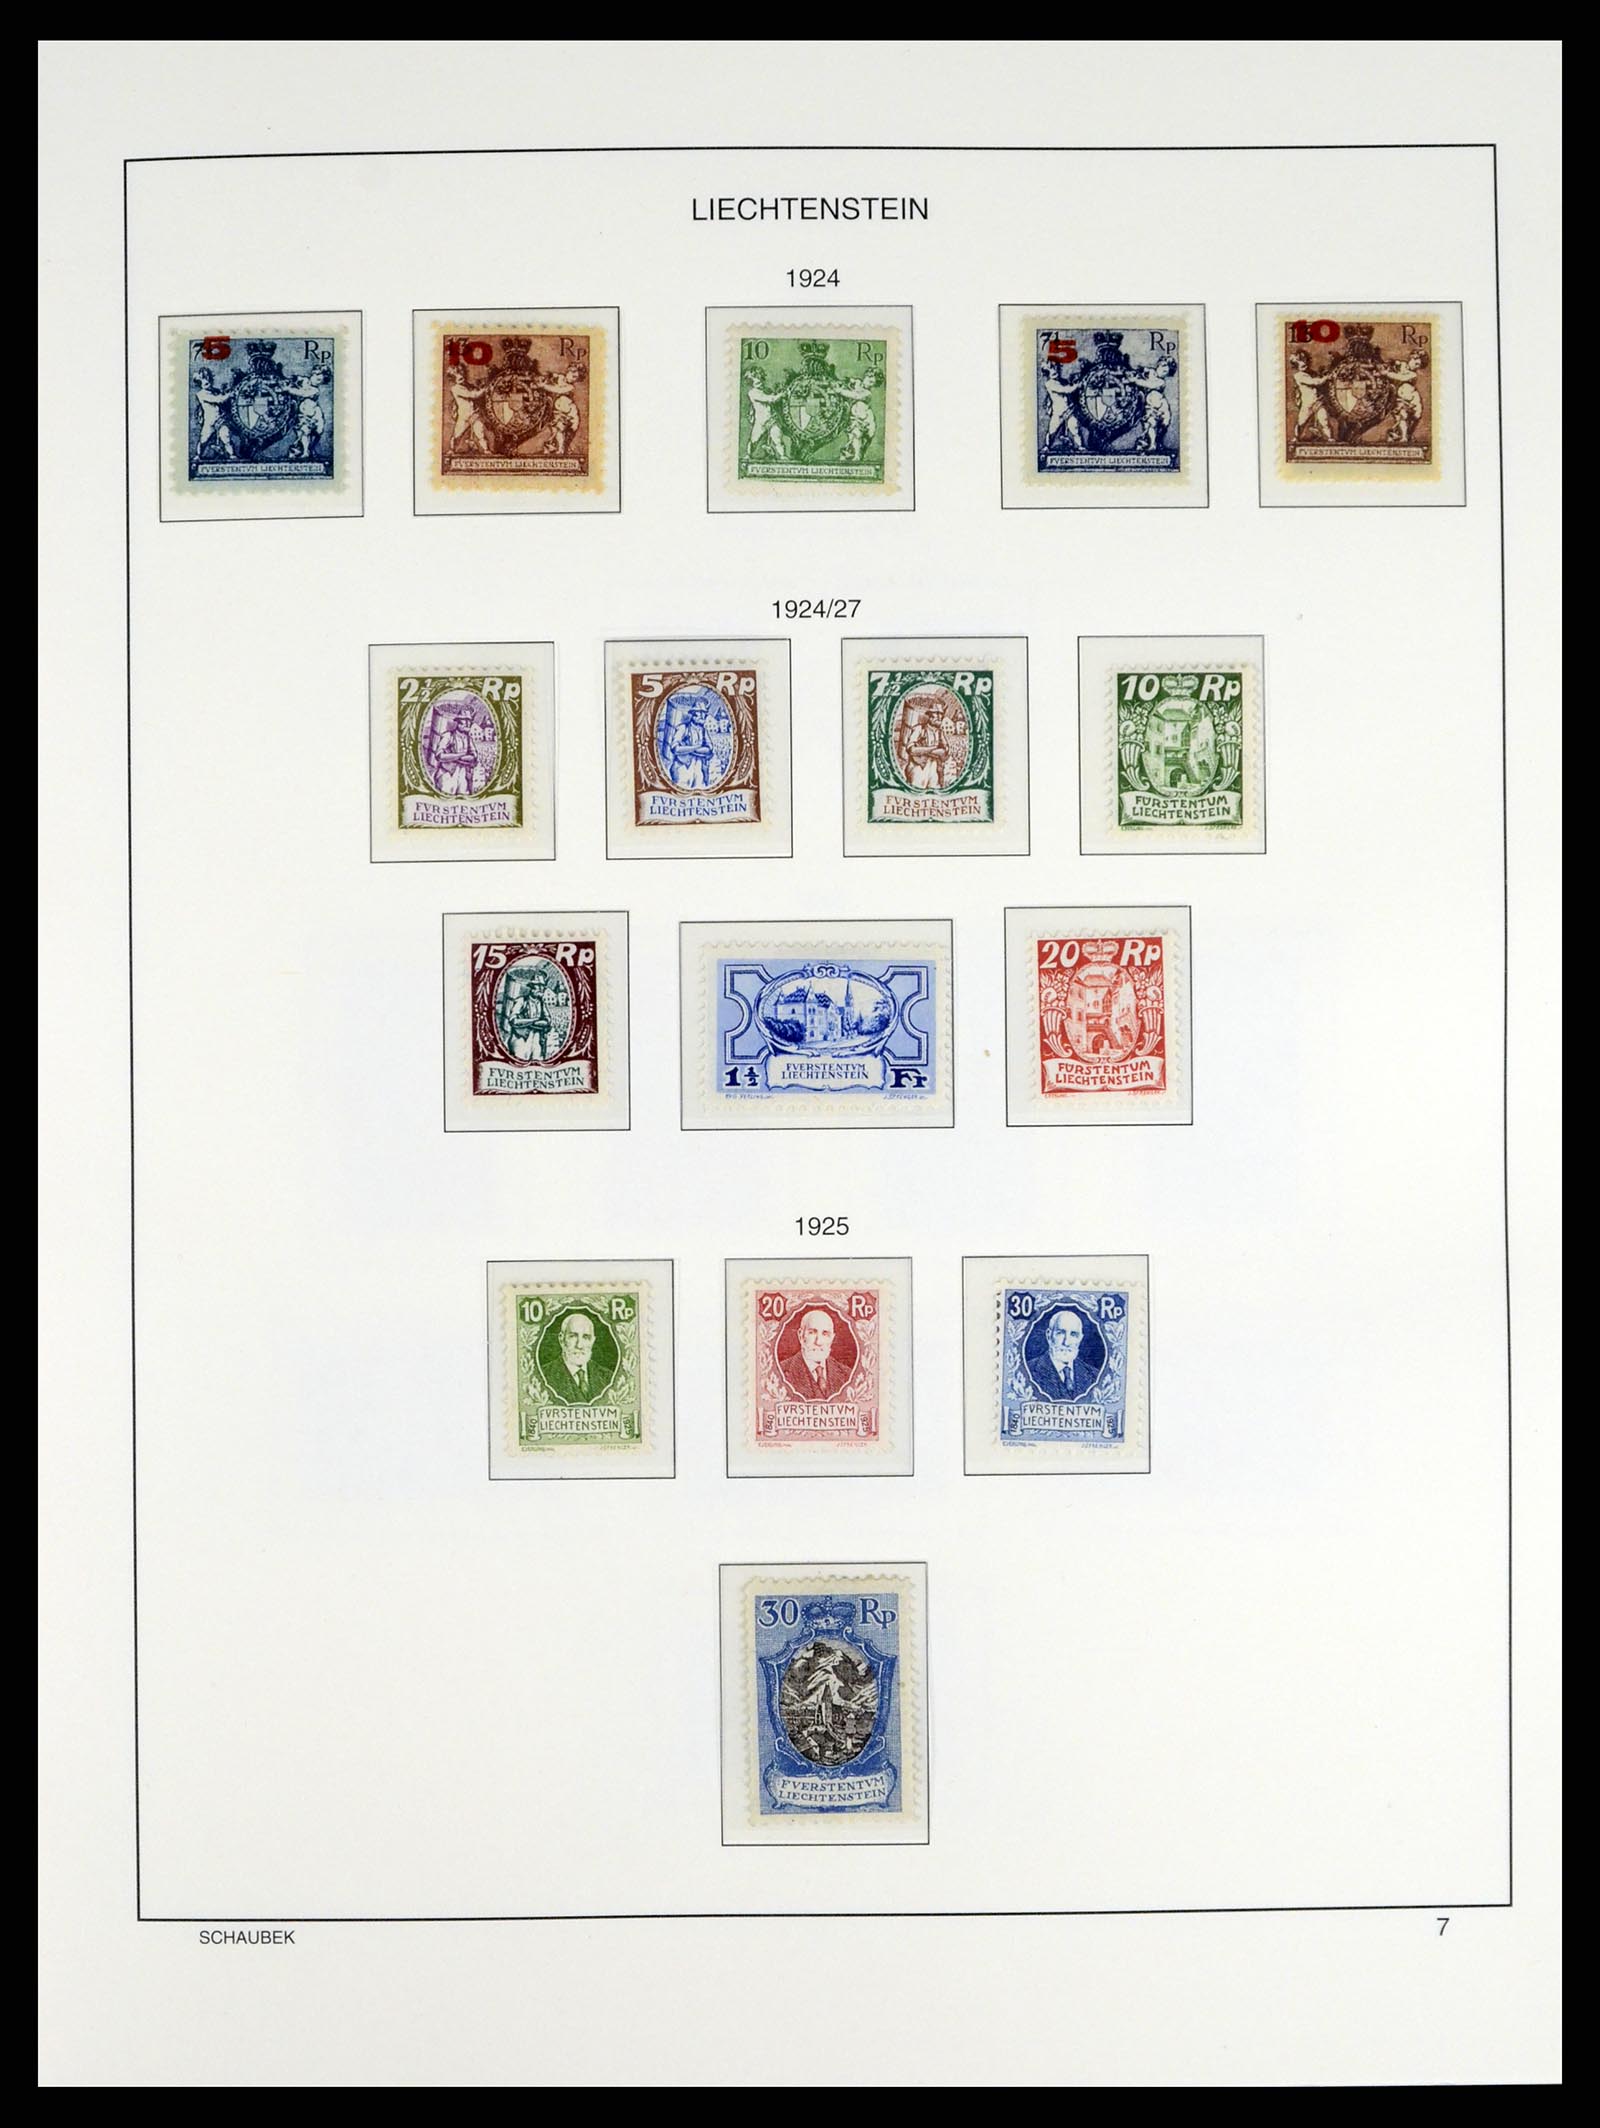 37547 007 - Postzegelverzameling 37547 Liechtenstein 1912-2011.